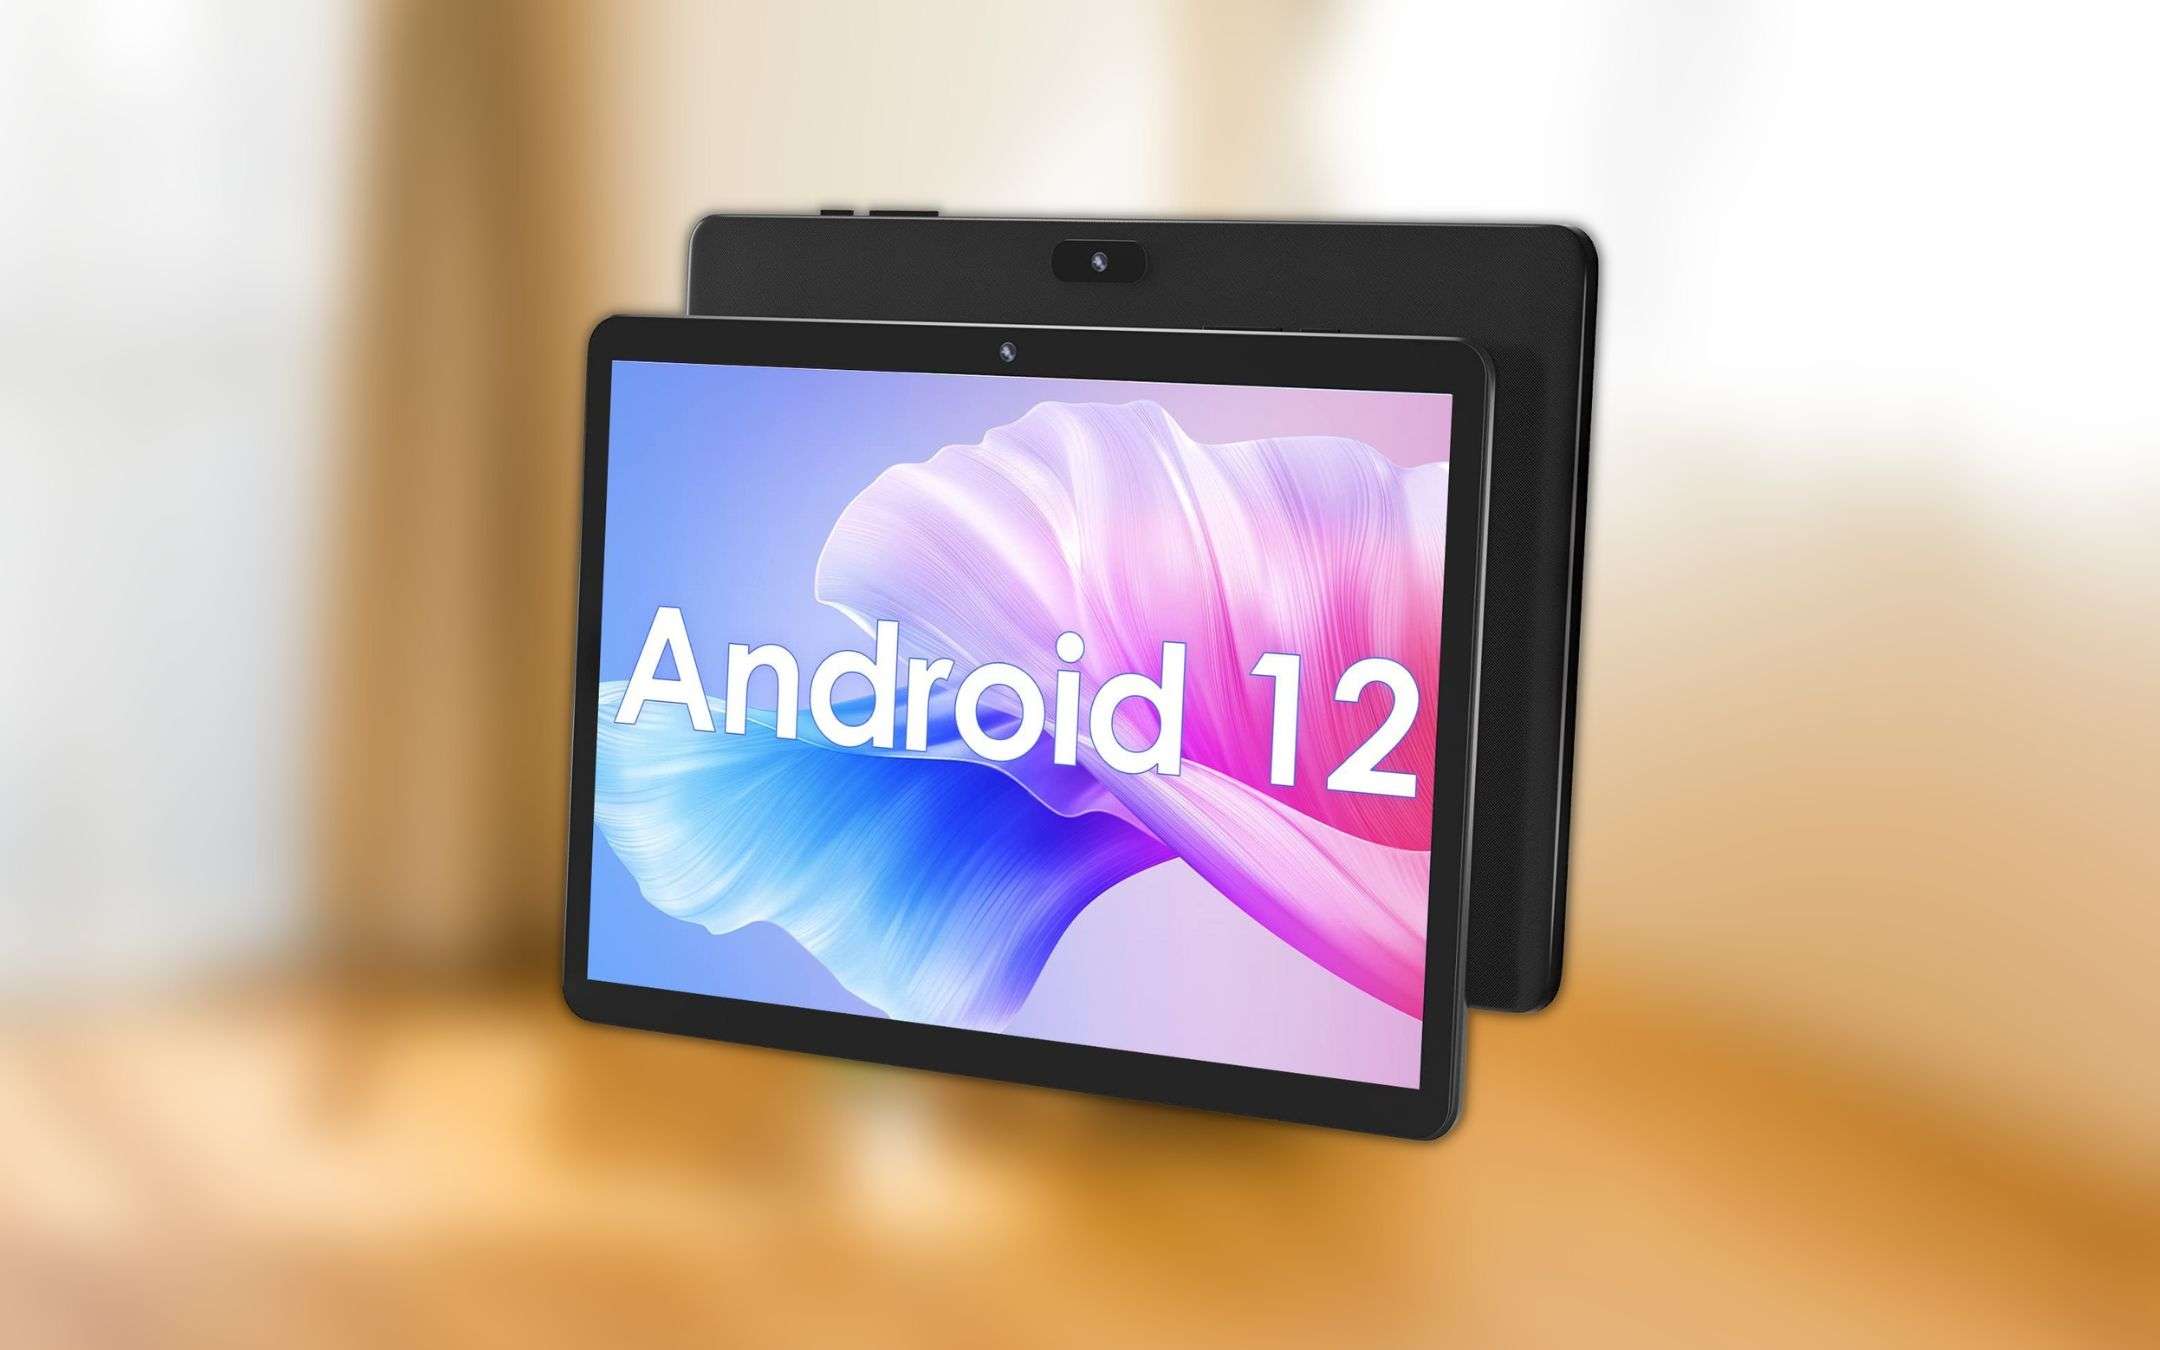 Fantastico tablet Android da 10 pollici a 79 euro: PAZZIA